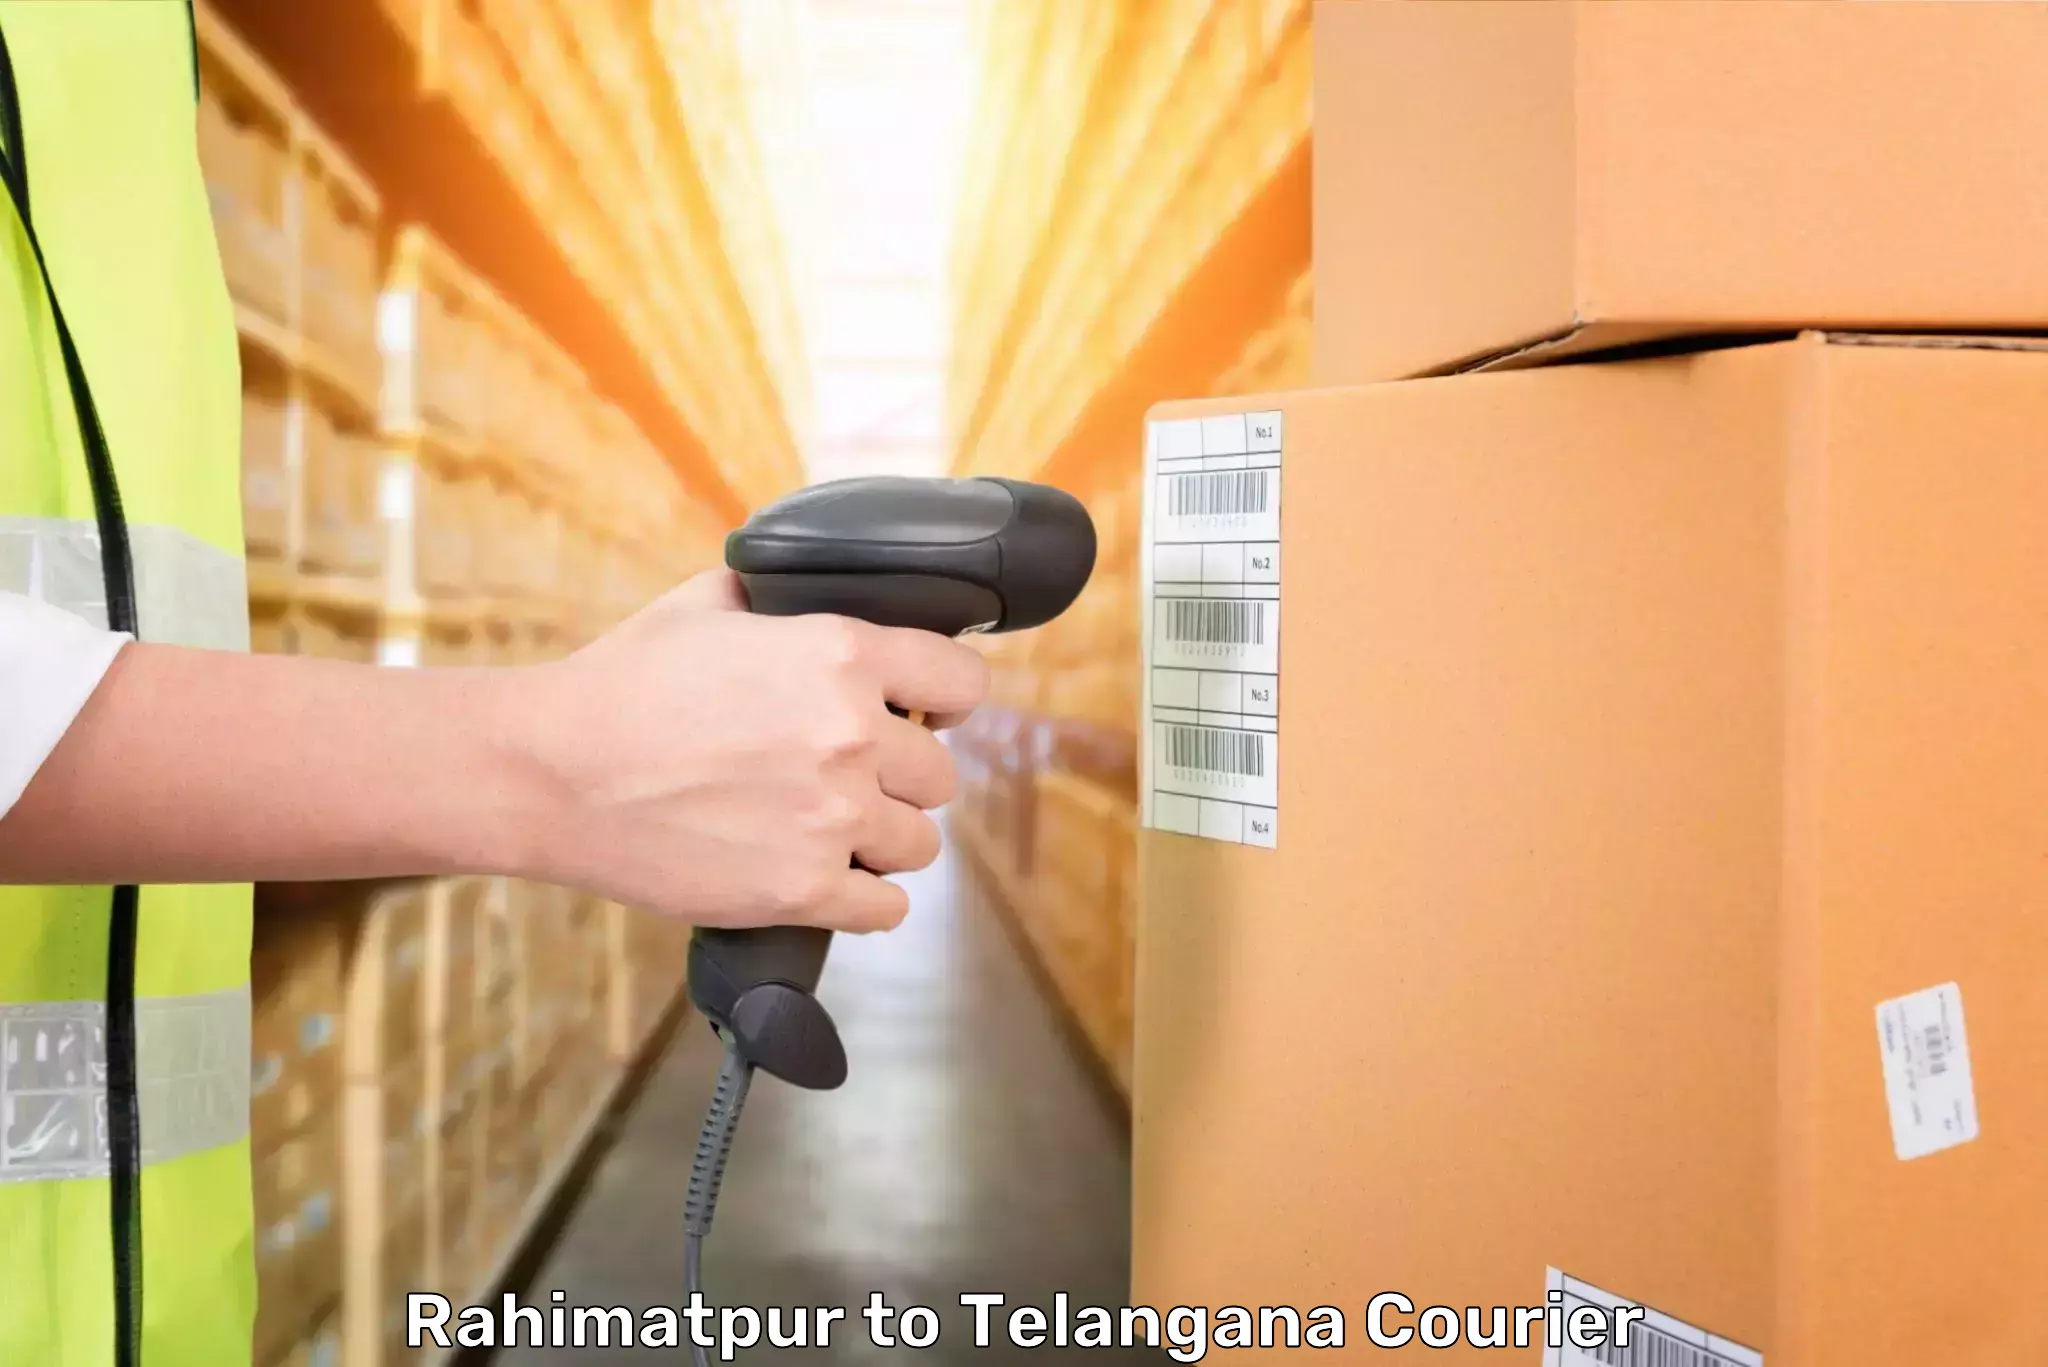 Baggage transport innovation Rahimatpur to Kollapur